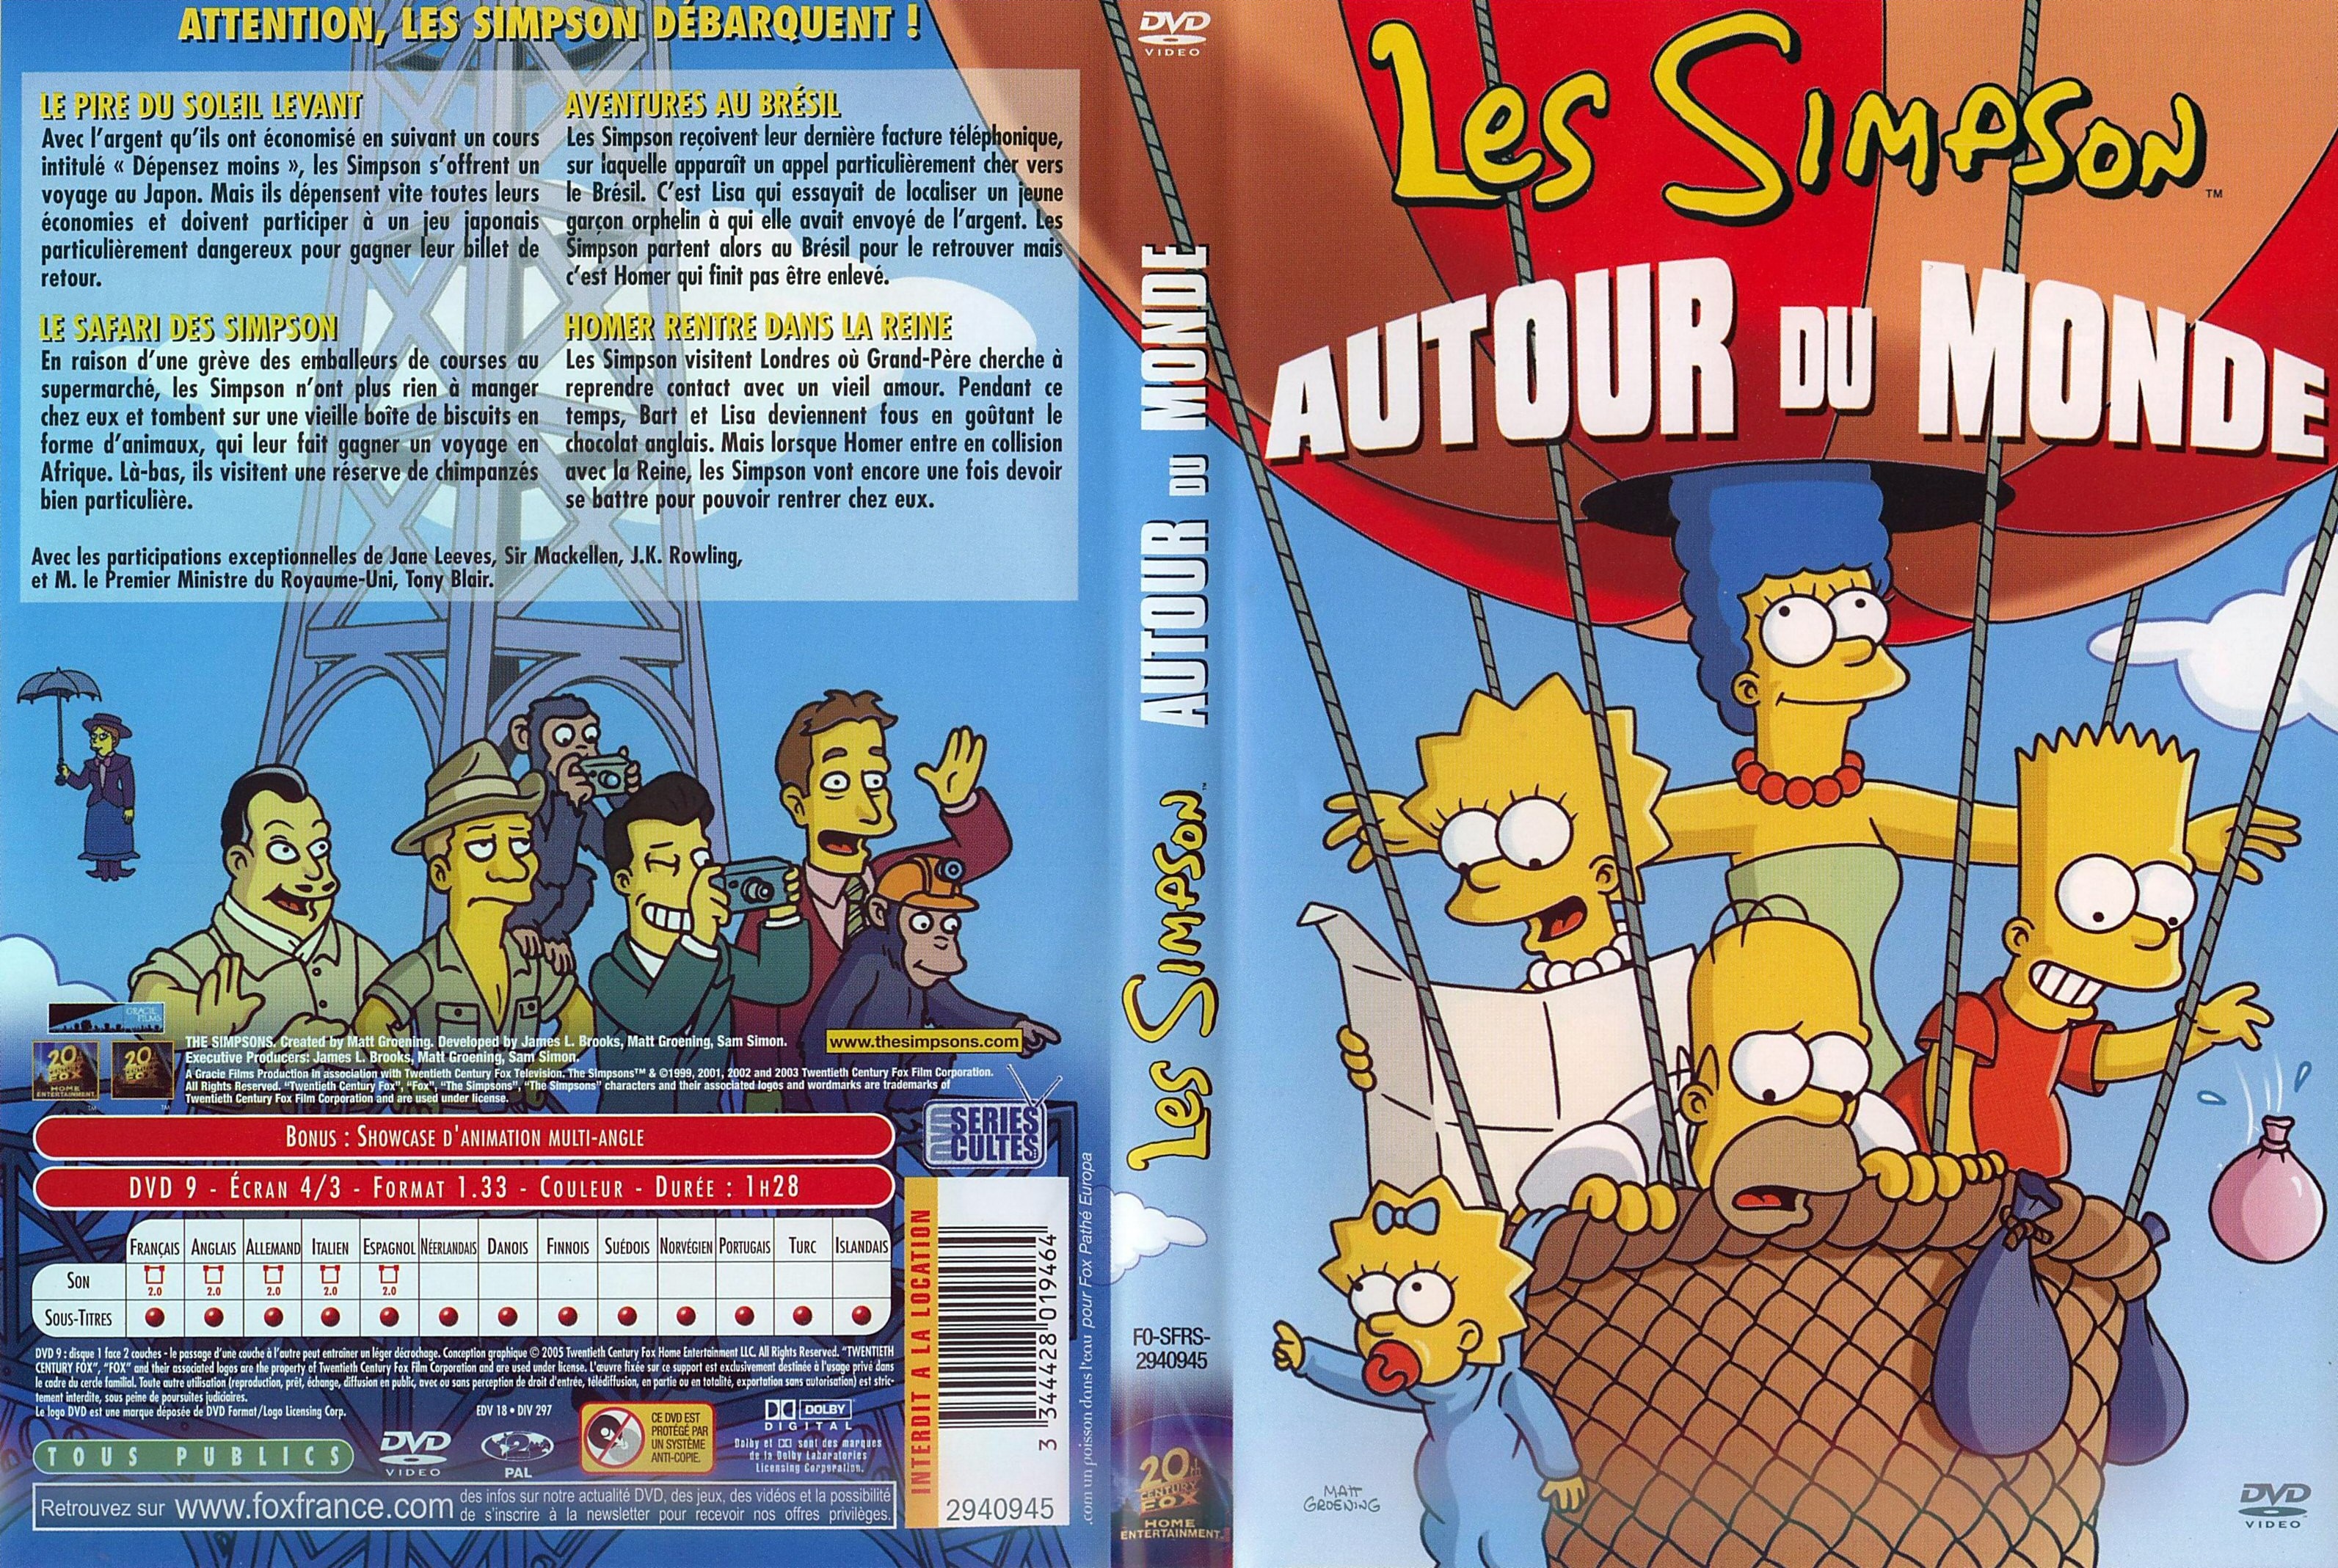 Jaquette DVD Les Simpson Autour du monde